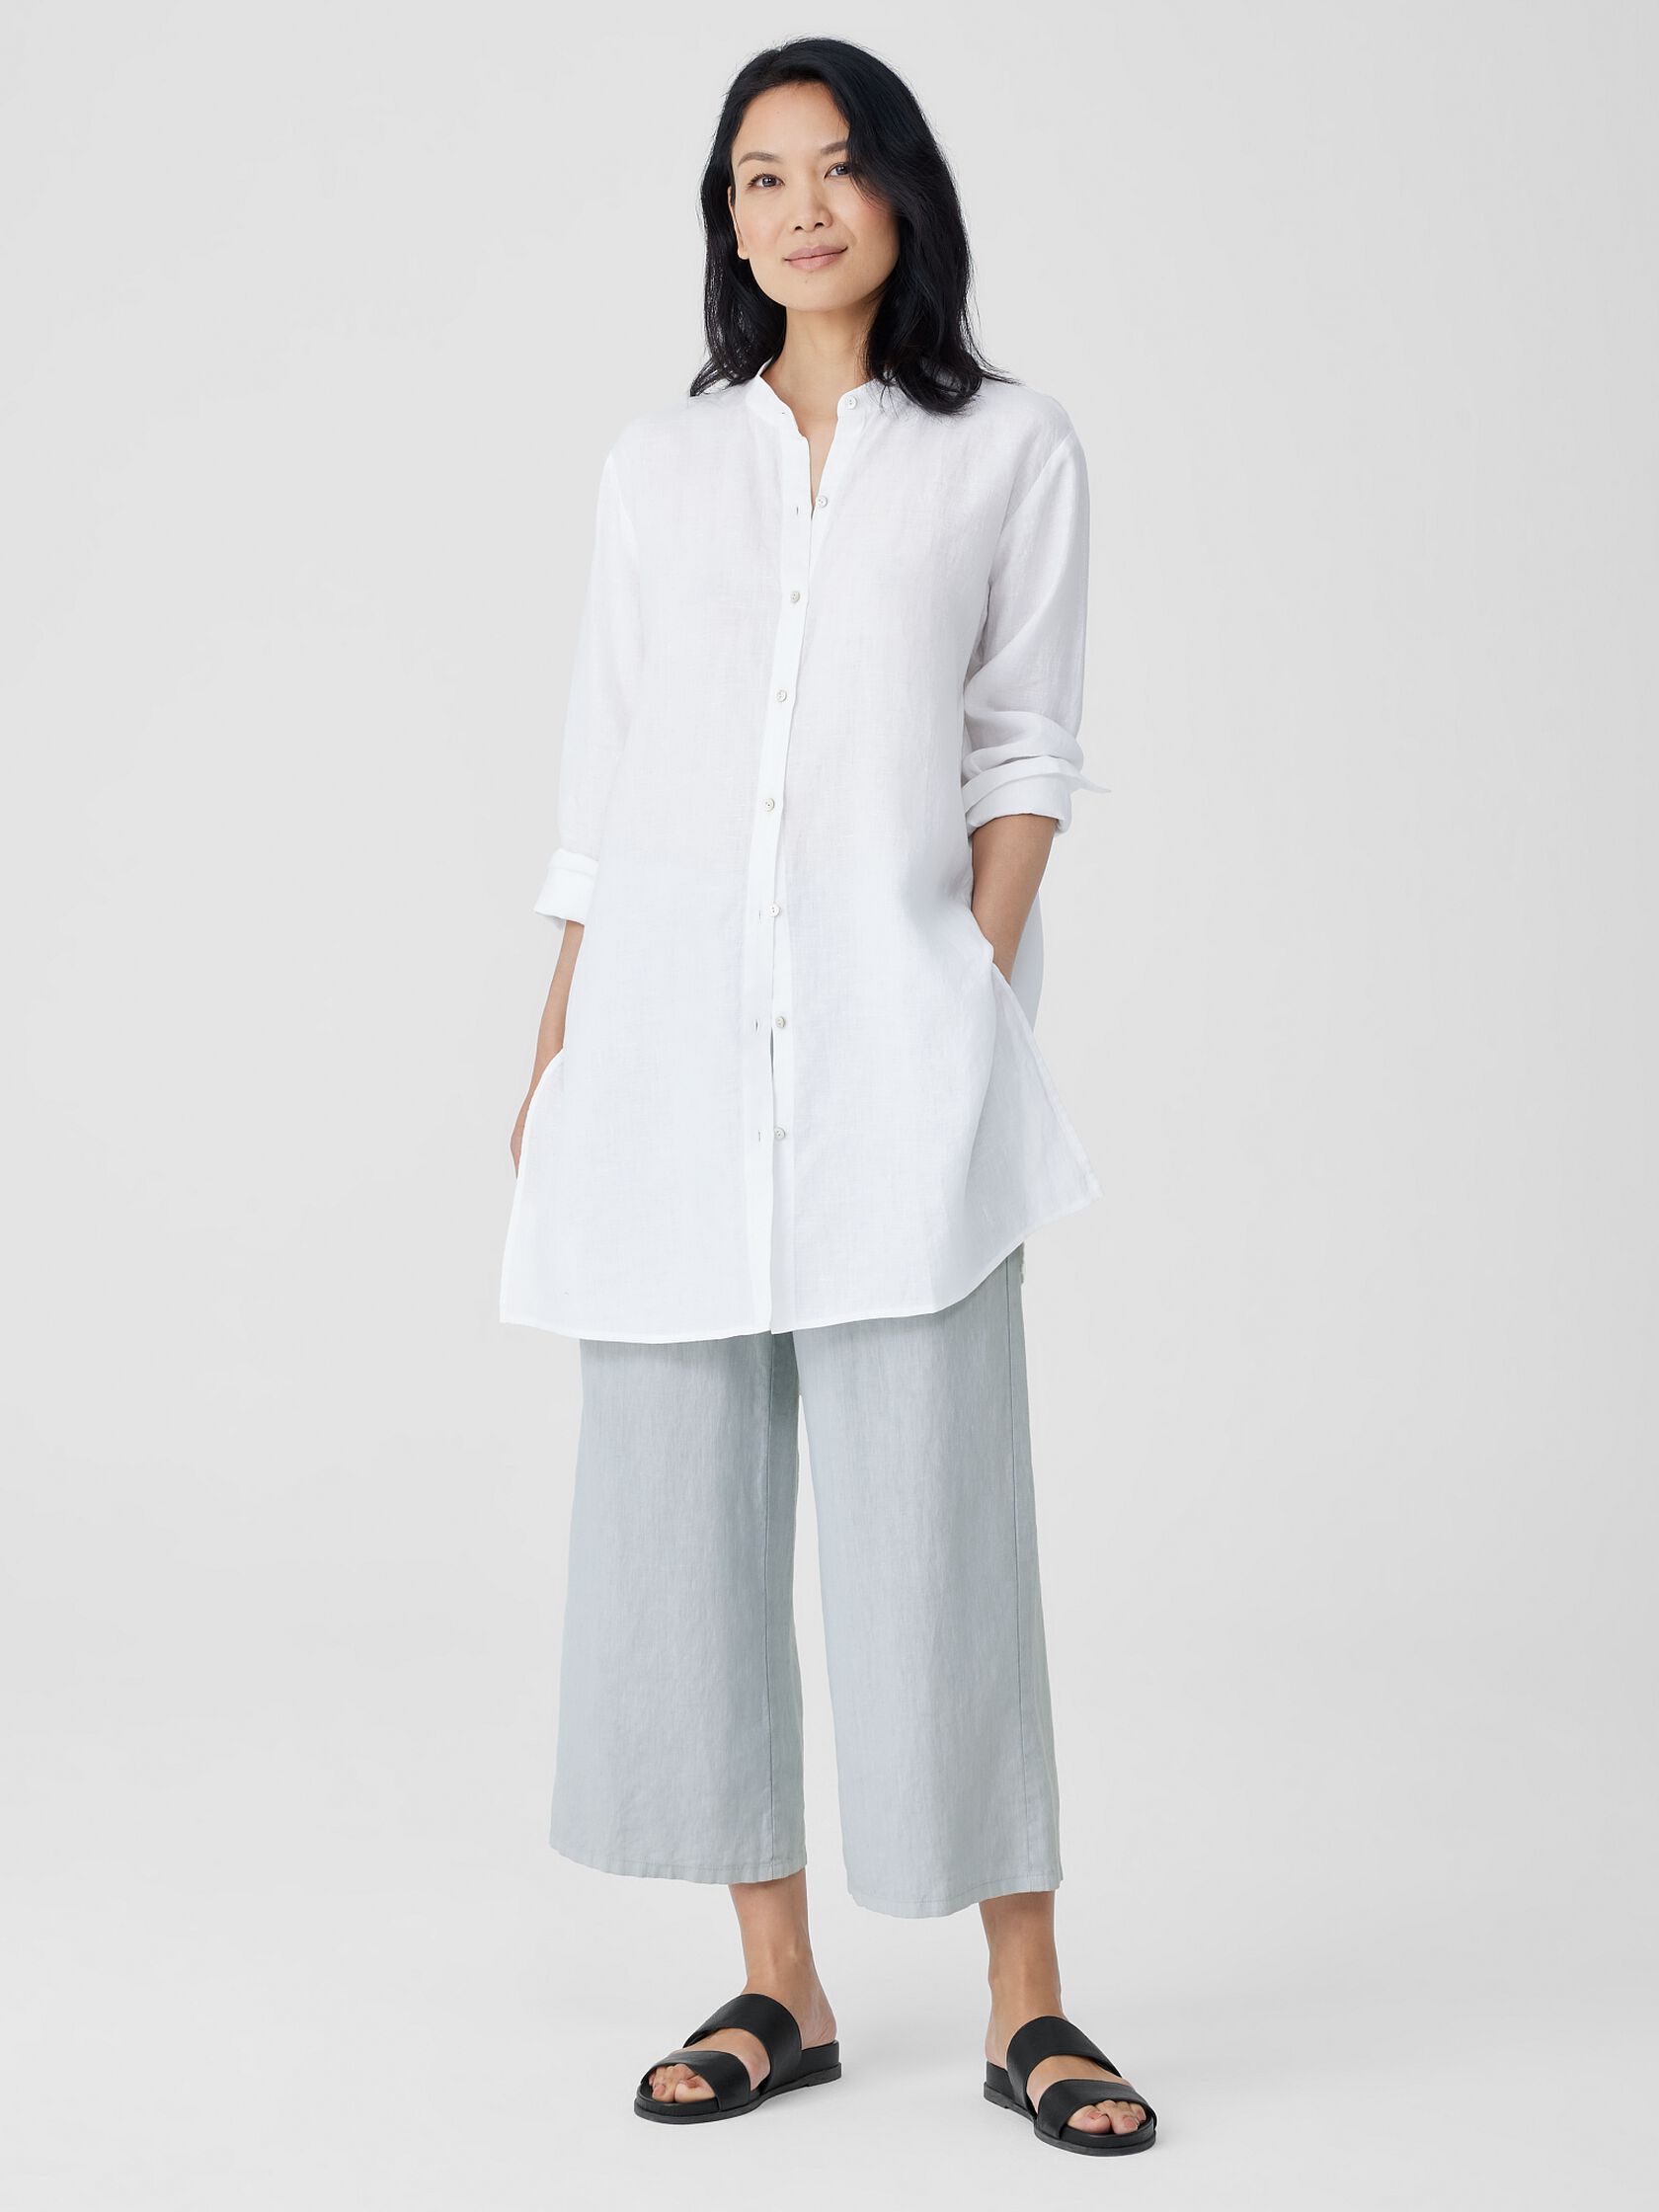 Handkerchief Linen Mandarin Collar Long Shirt